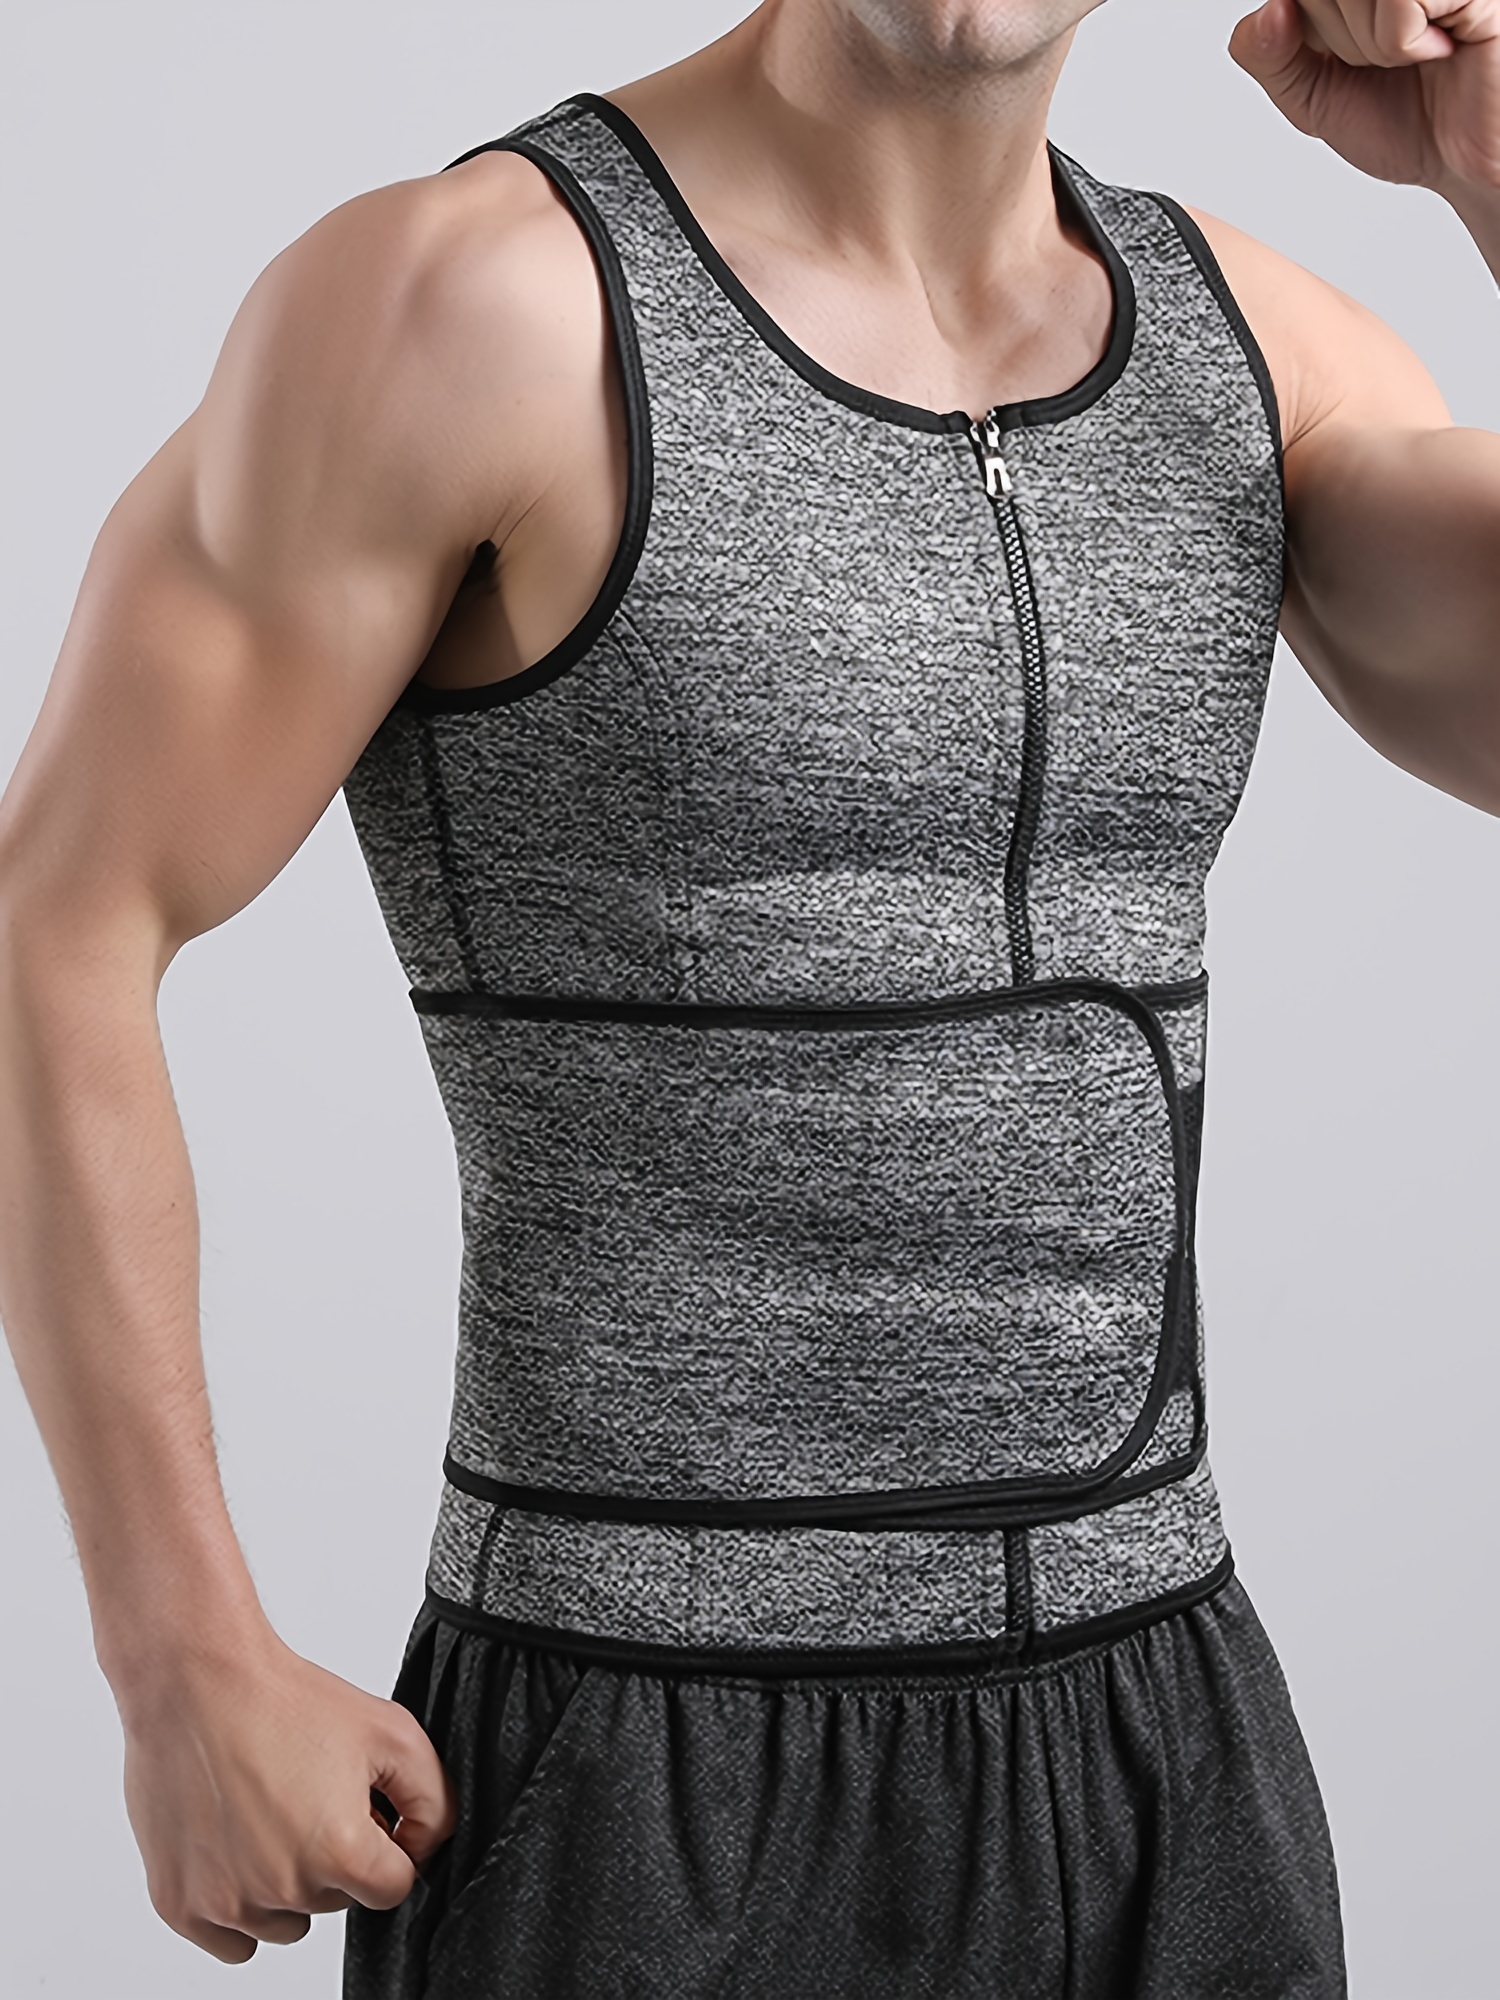 Mens Neoprene Slimming Body Shaper Fitness Sweat Shapewear Waist Body  Building Slim Fit Zipper Vest